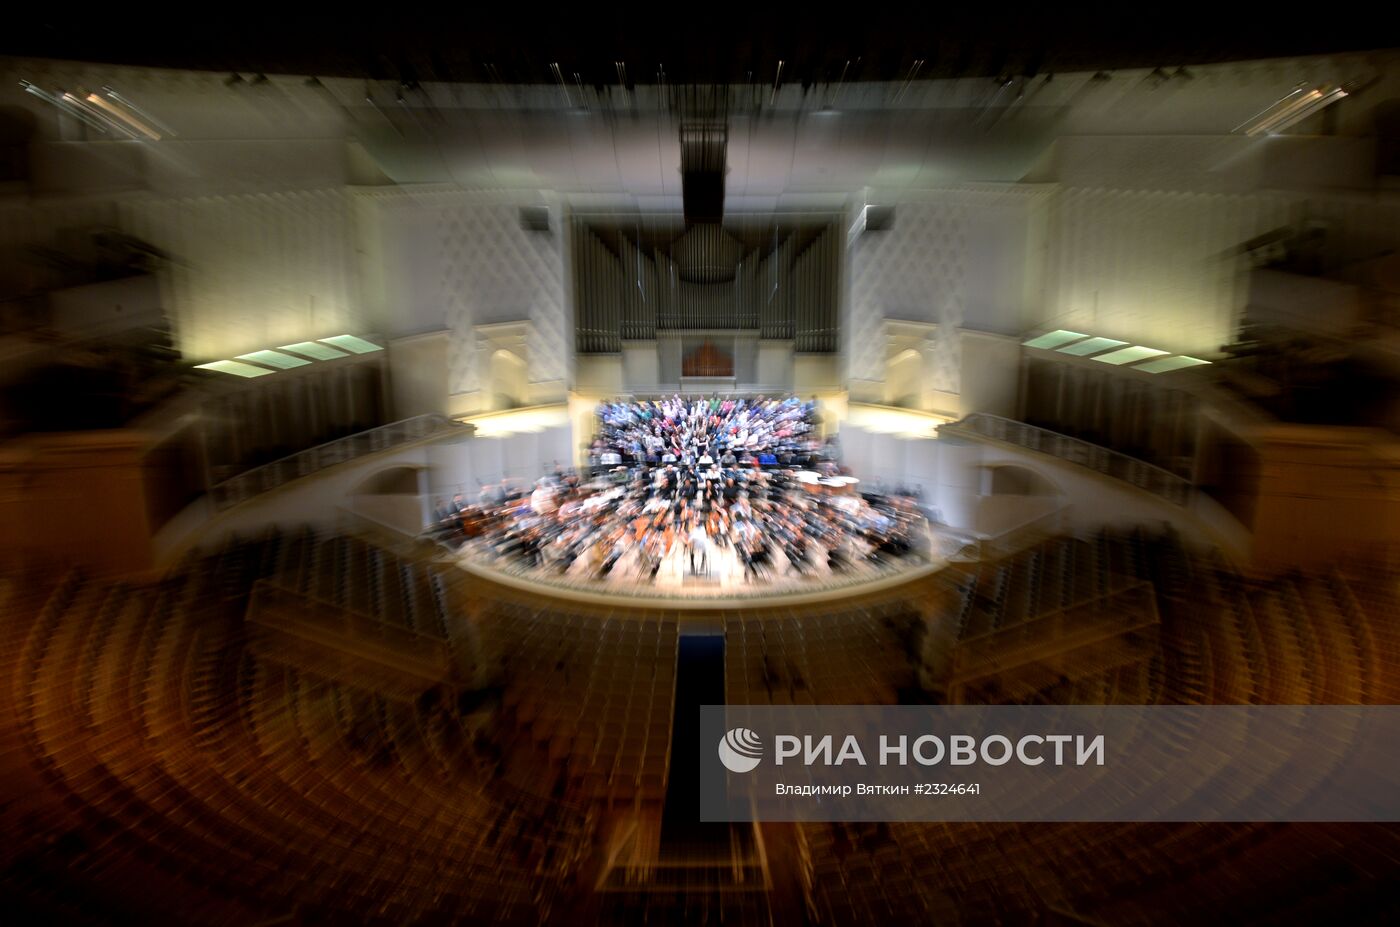 Репетиция Венского филармонического оркестра